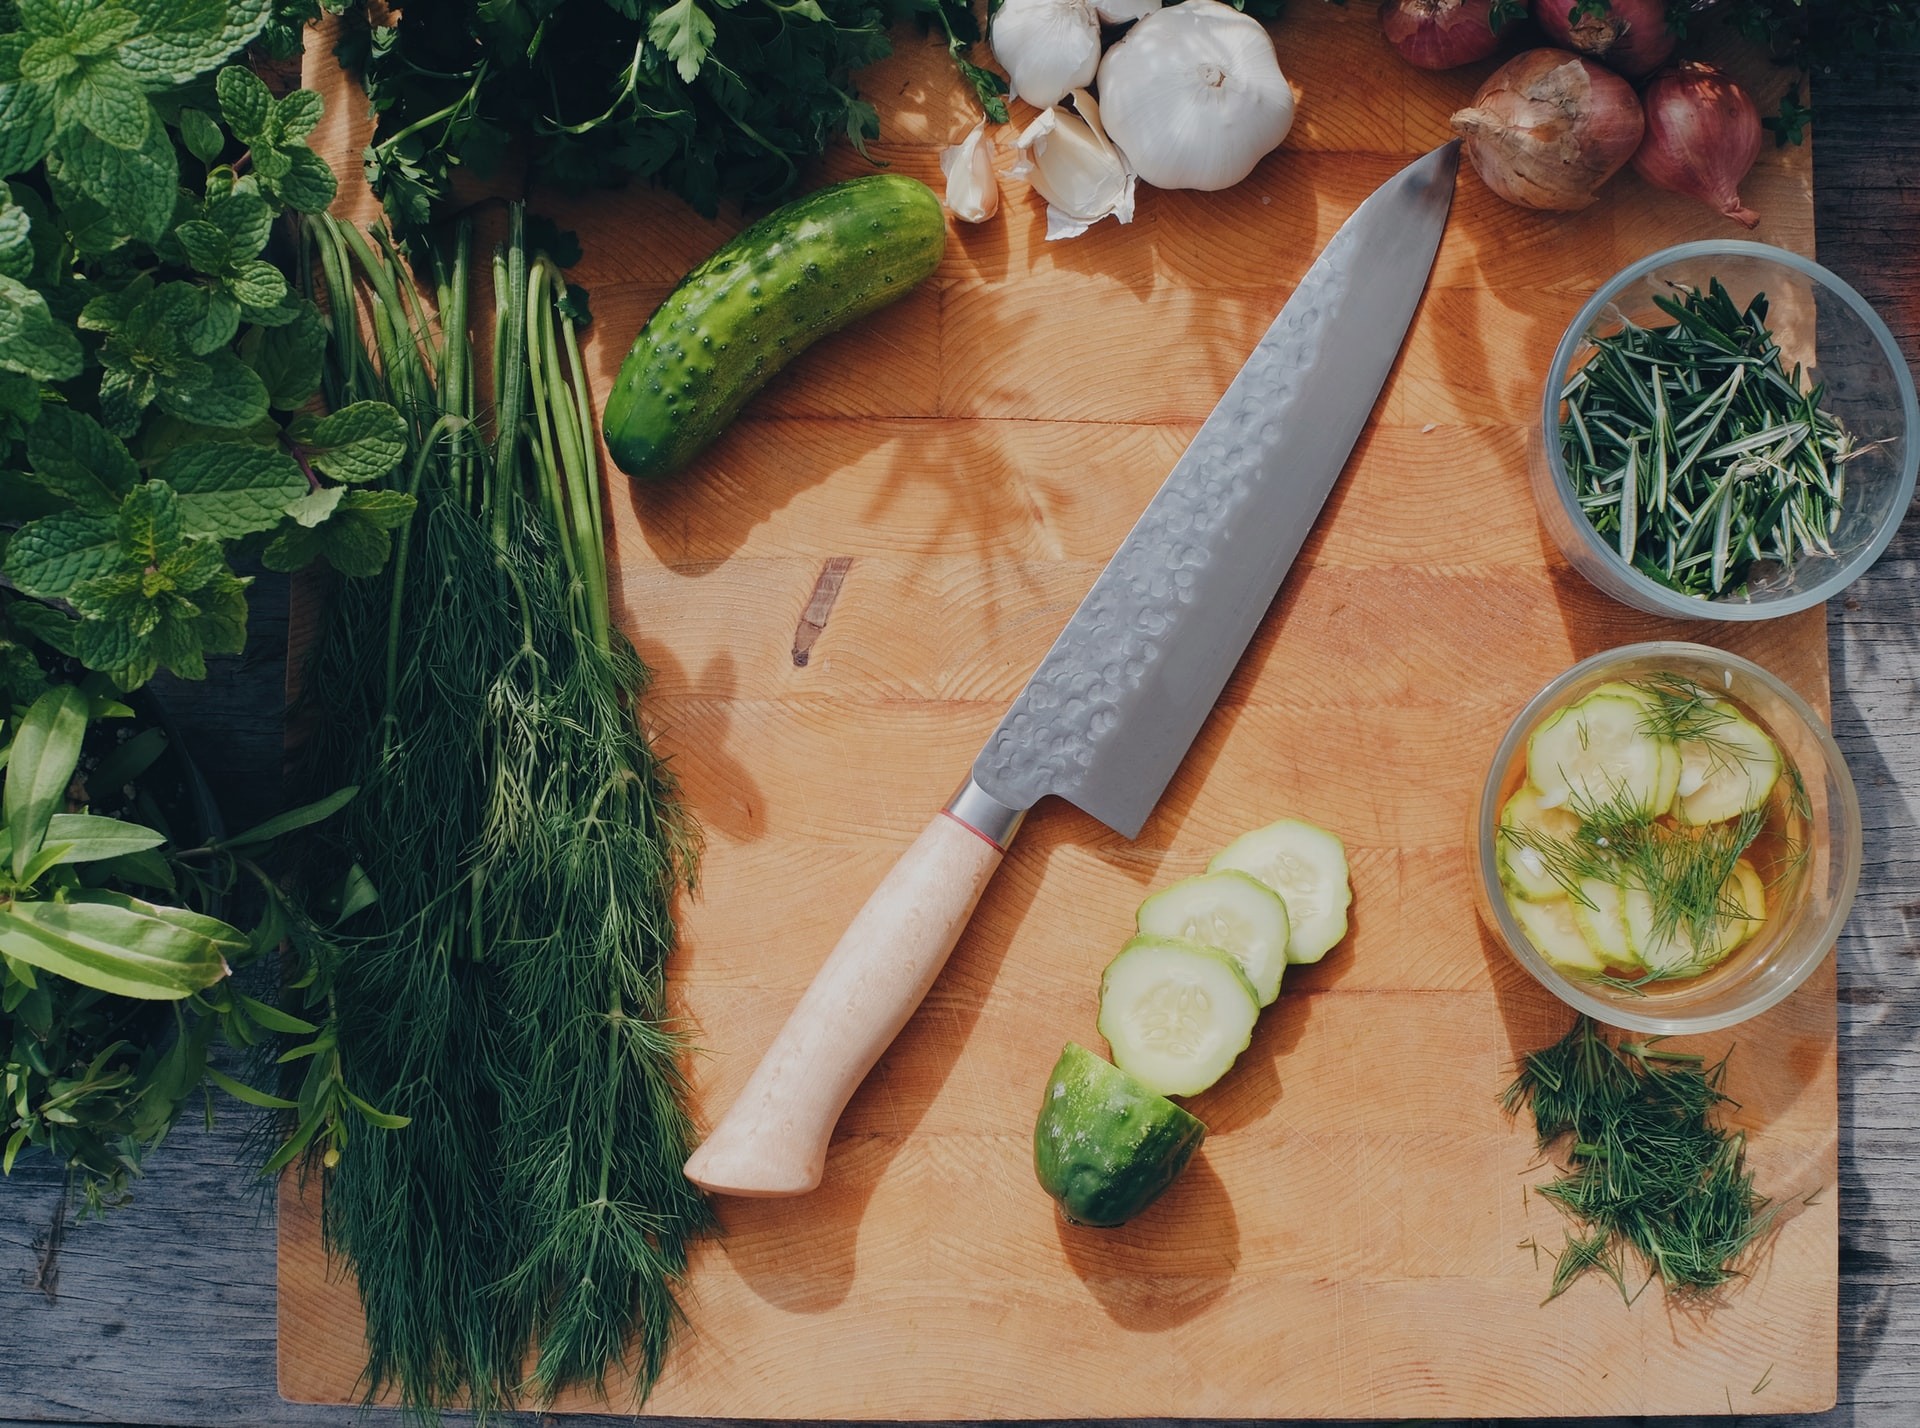 Chef explica qual é a faca certa para cada alimento (Foto: Unsplash)